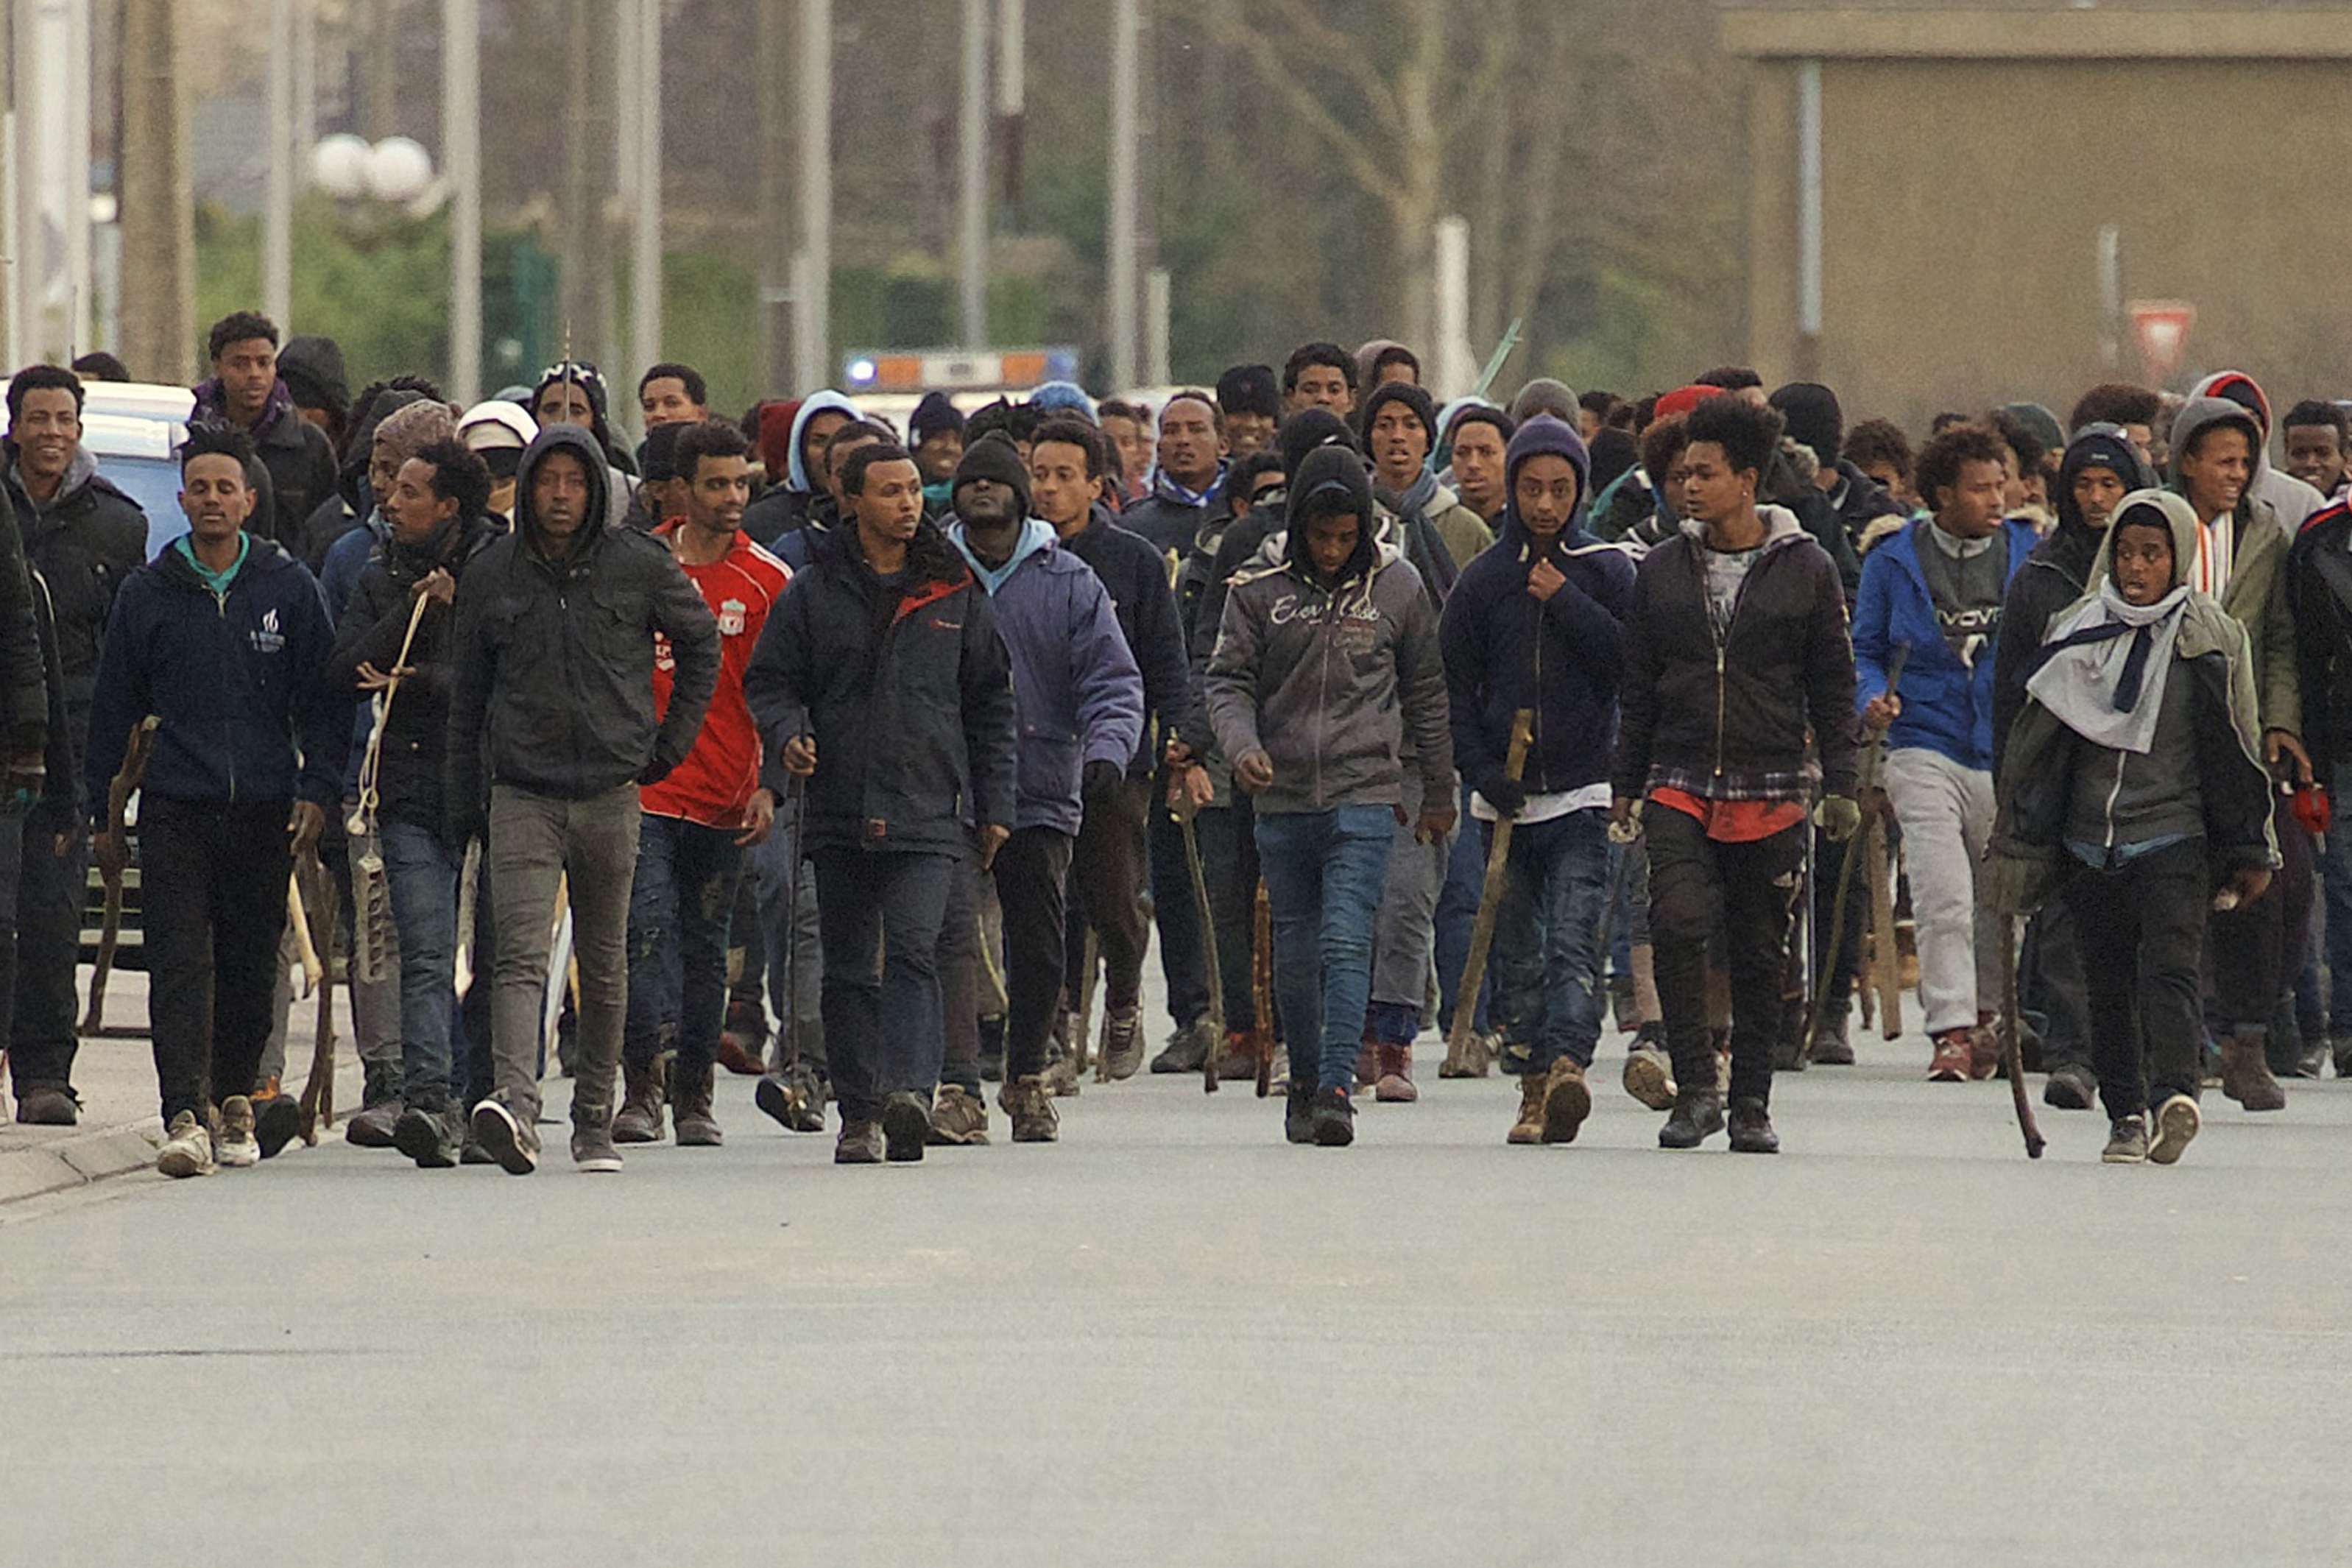 Группа эмигранты. Иммигранты во Франции. Толпа мигрантов. Французы мигранты. Негр эмигрант.